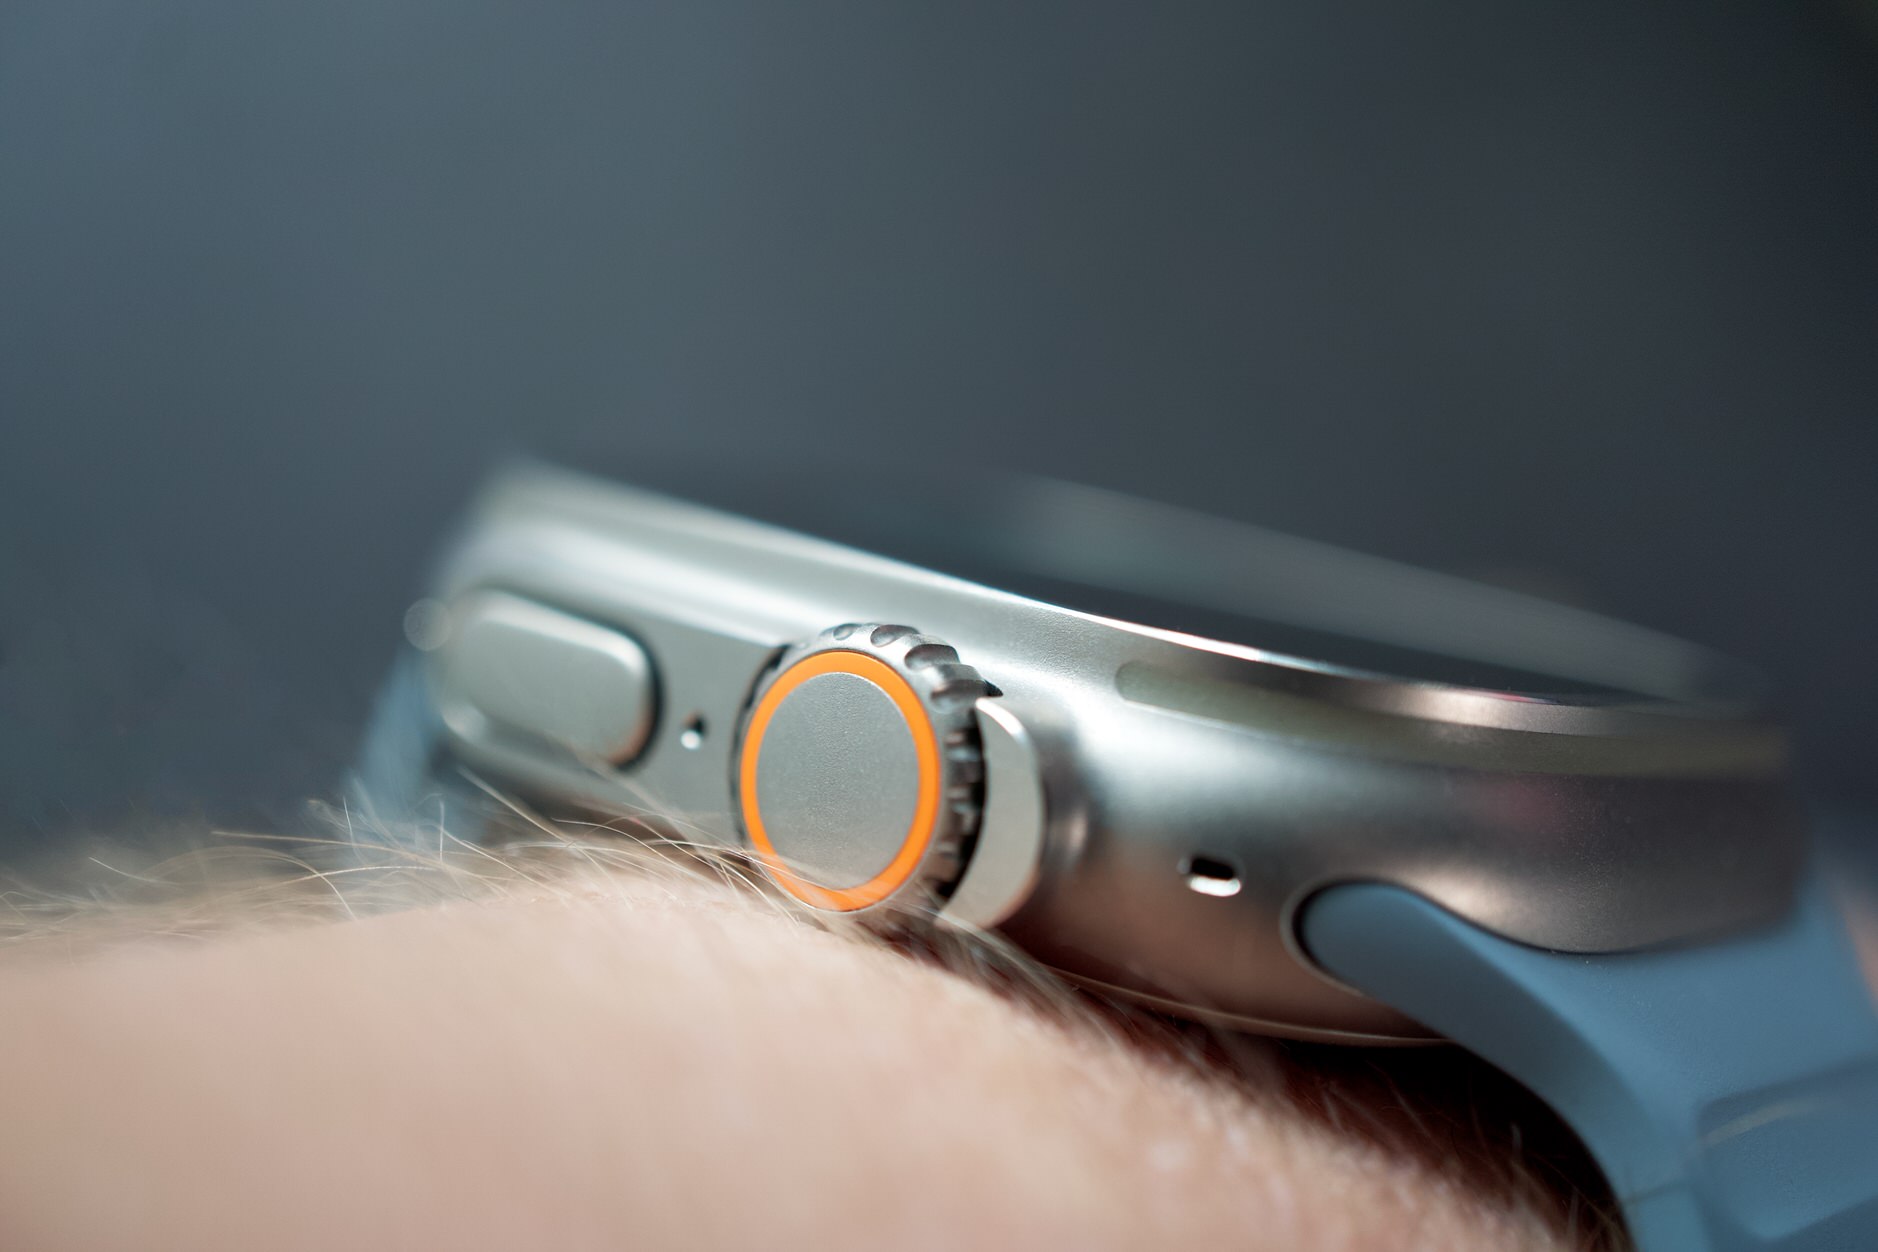 Bild zeigt Apple Watch und seiner Digitaler Krone.